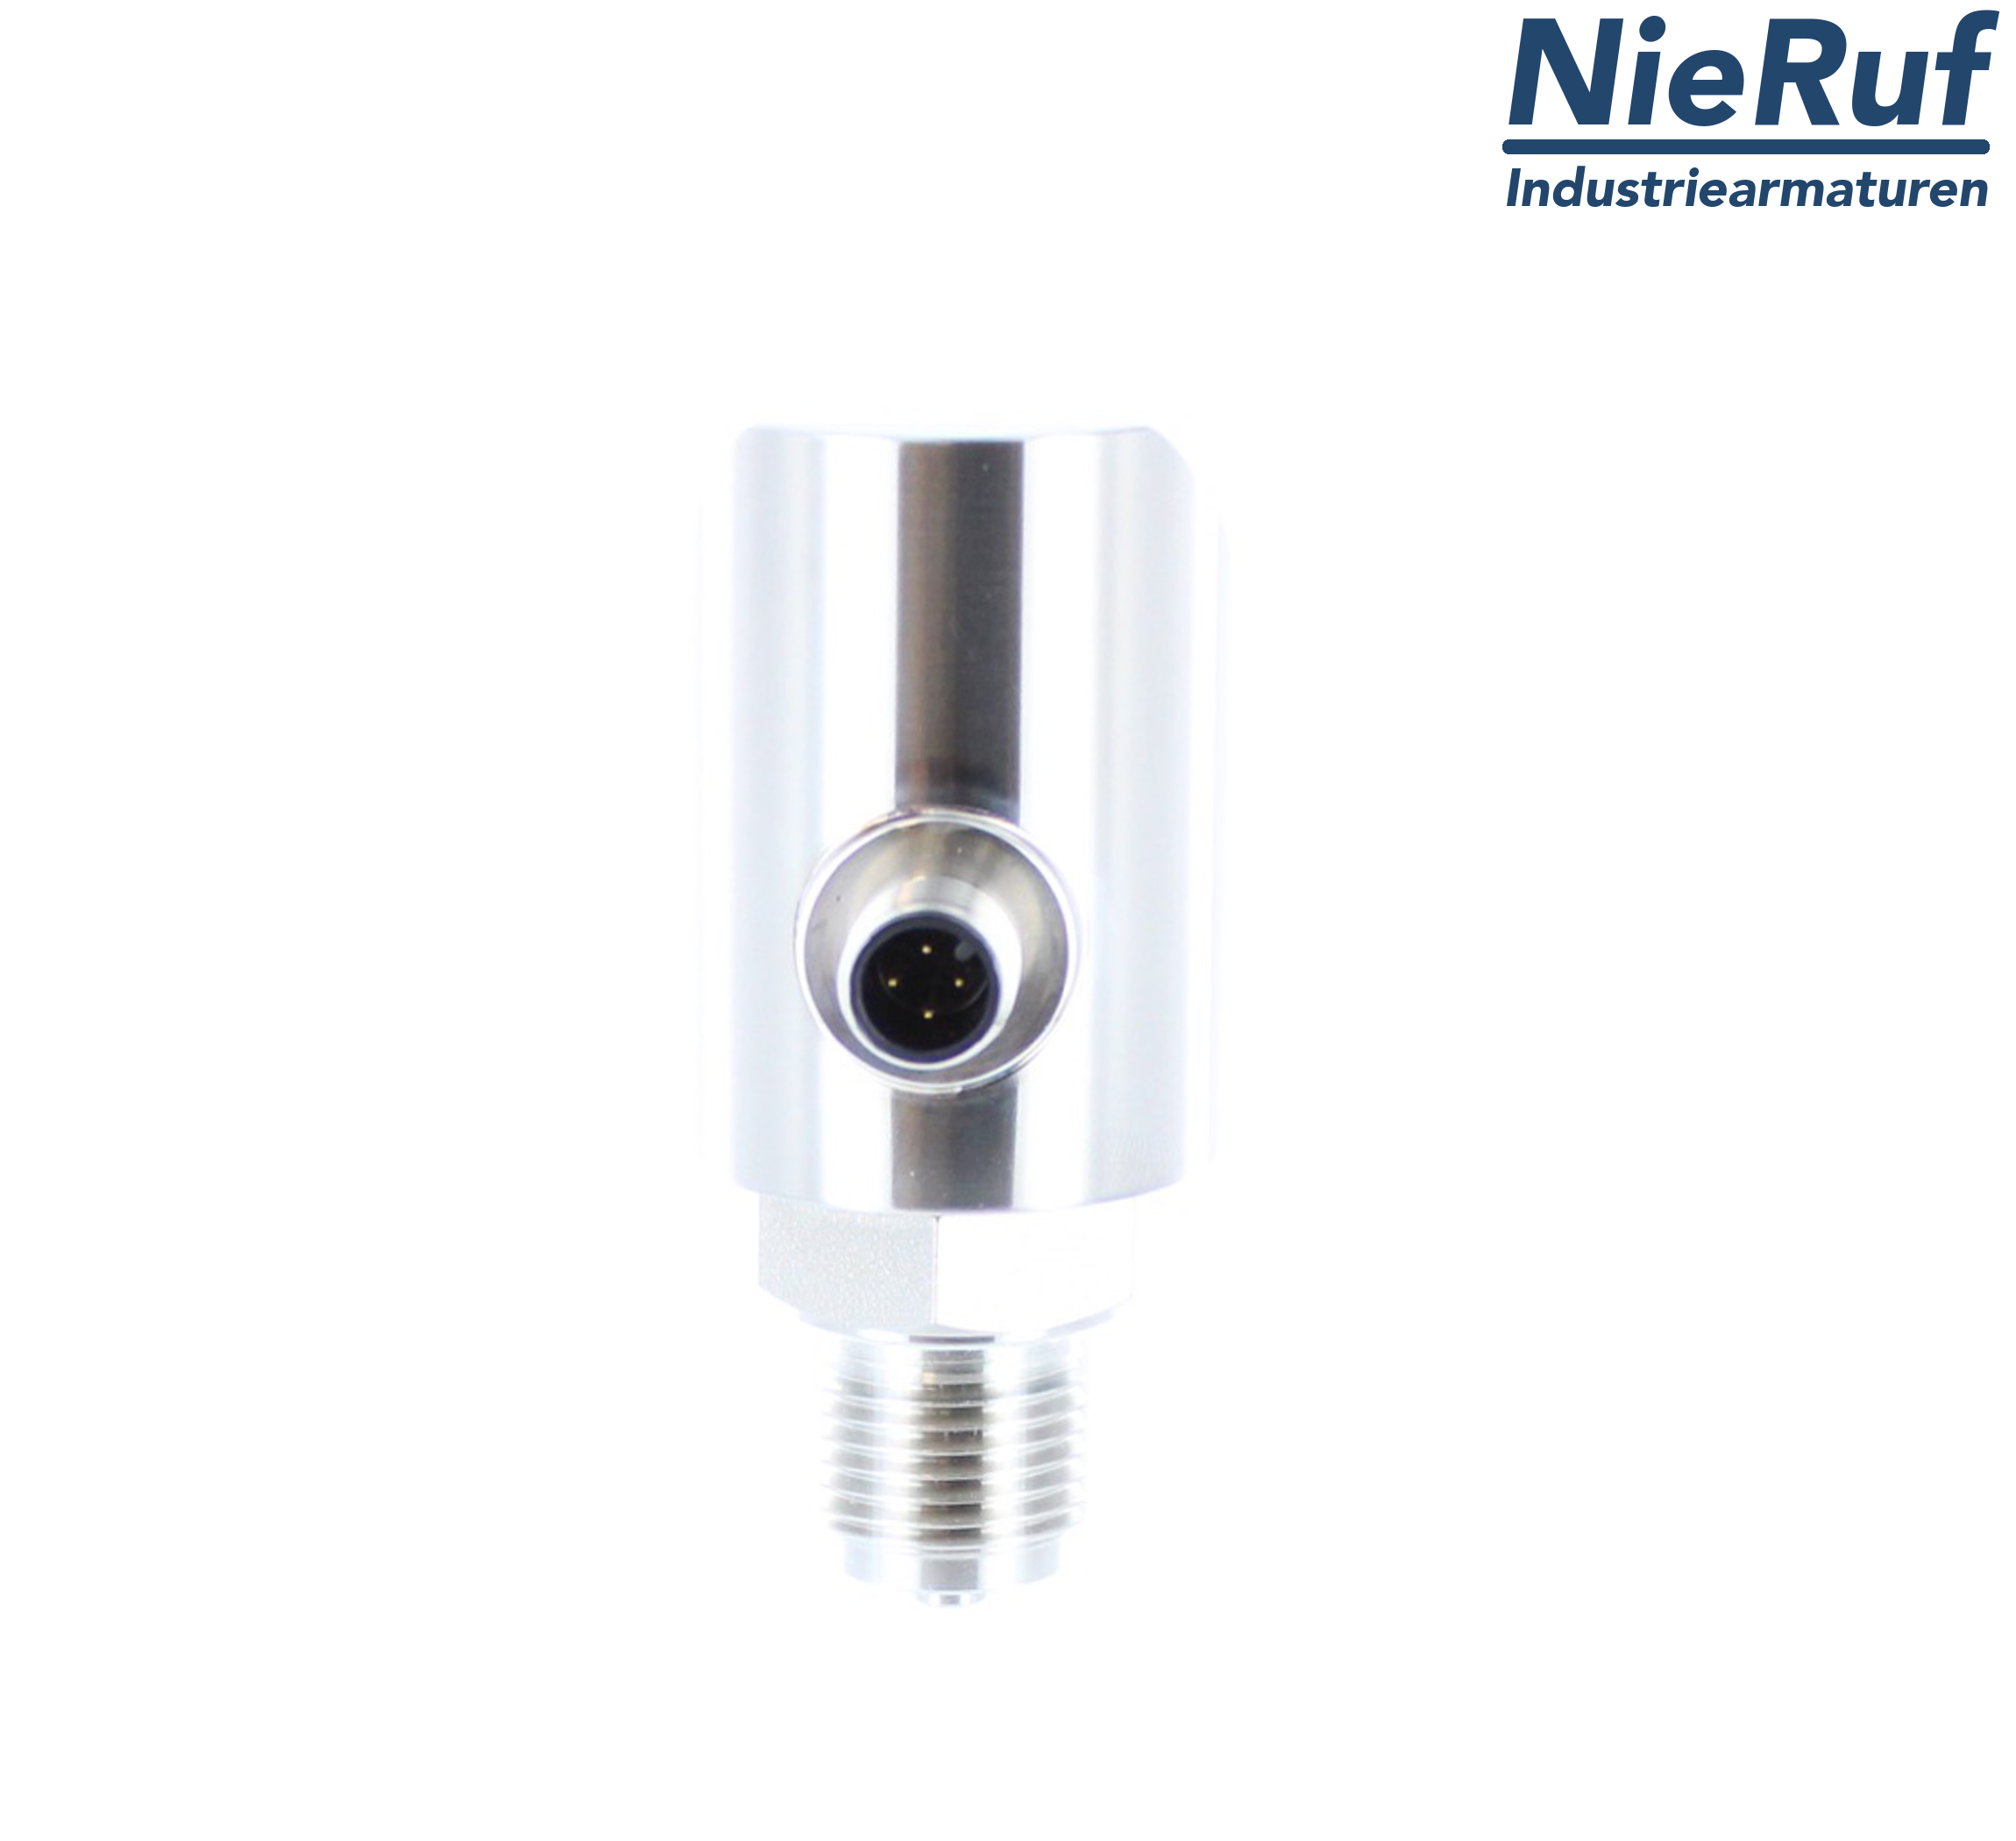 digital pressure sensor G 1/2" B 5-wire: 2xPNP, 1x4 - 20mA FPM 0,0 - 2,5 bar